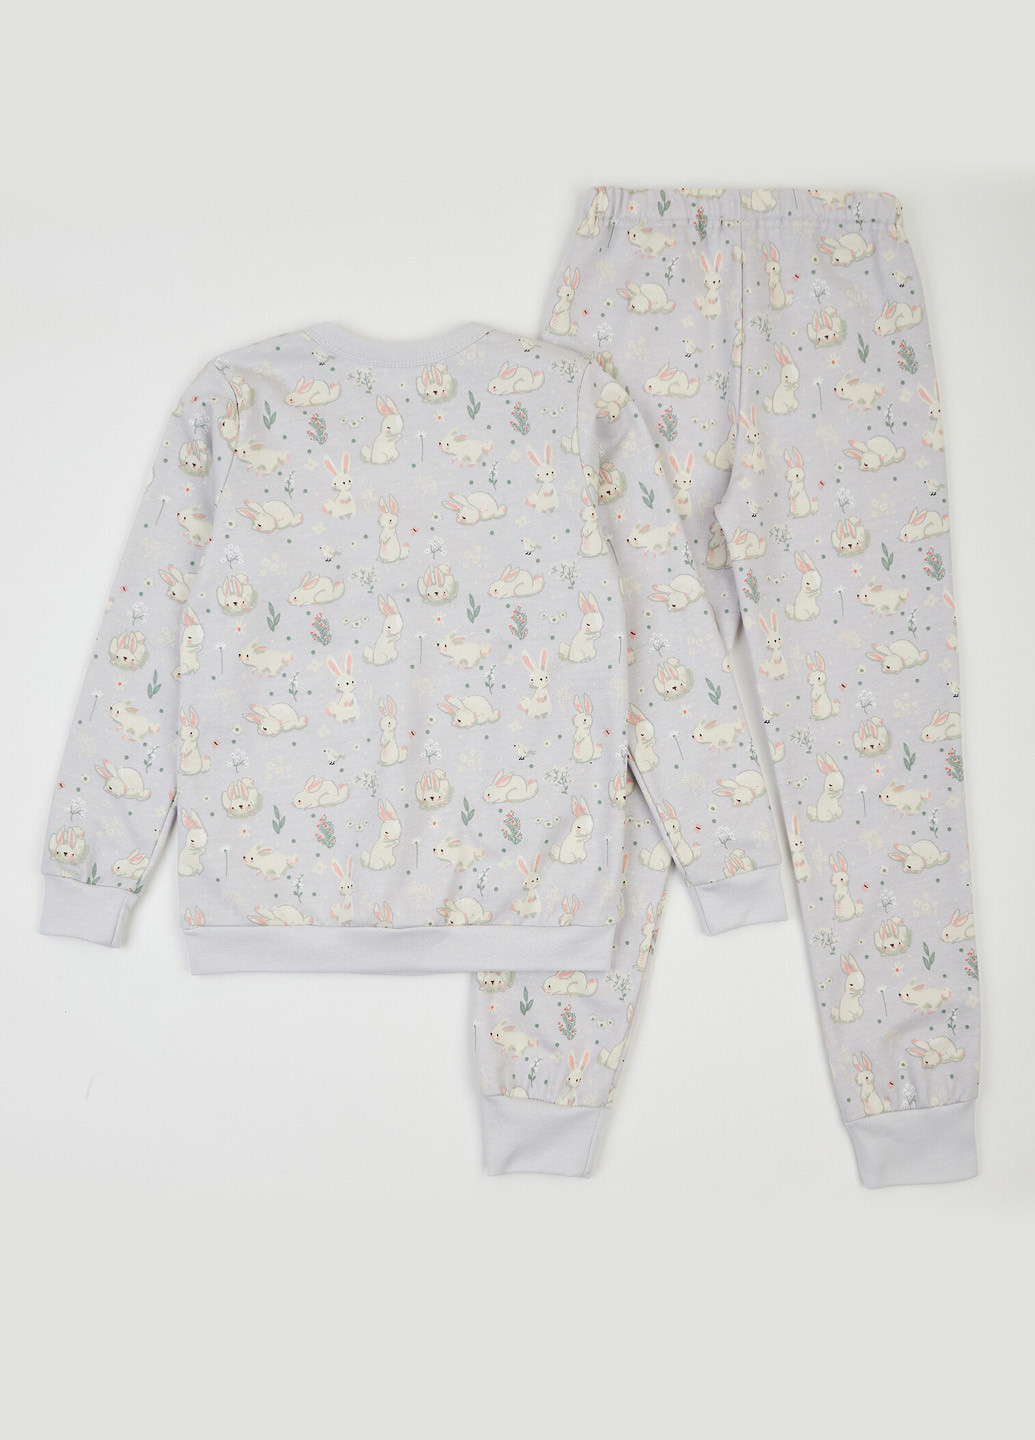 Светло-серая всесезон пижама (свитшот, брюки) свитшот + брюки Ляля